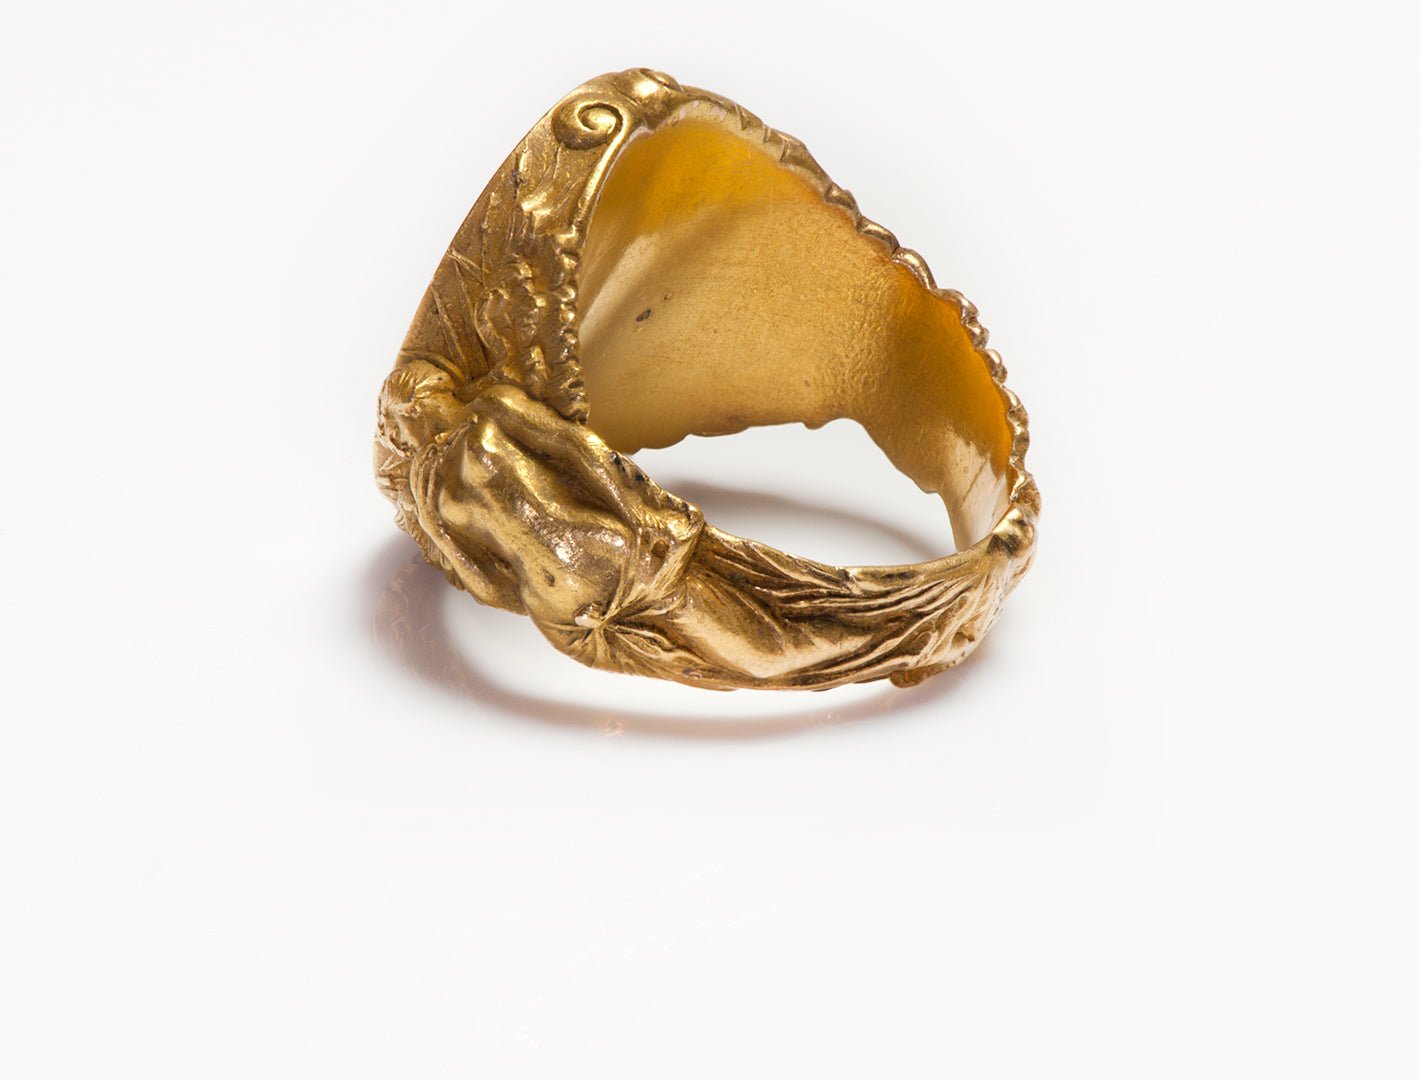 Antique Art Nouveau Gold Intaglio Crest Ring